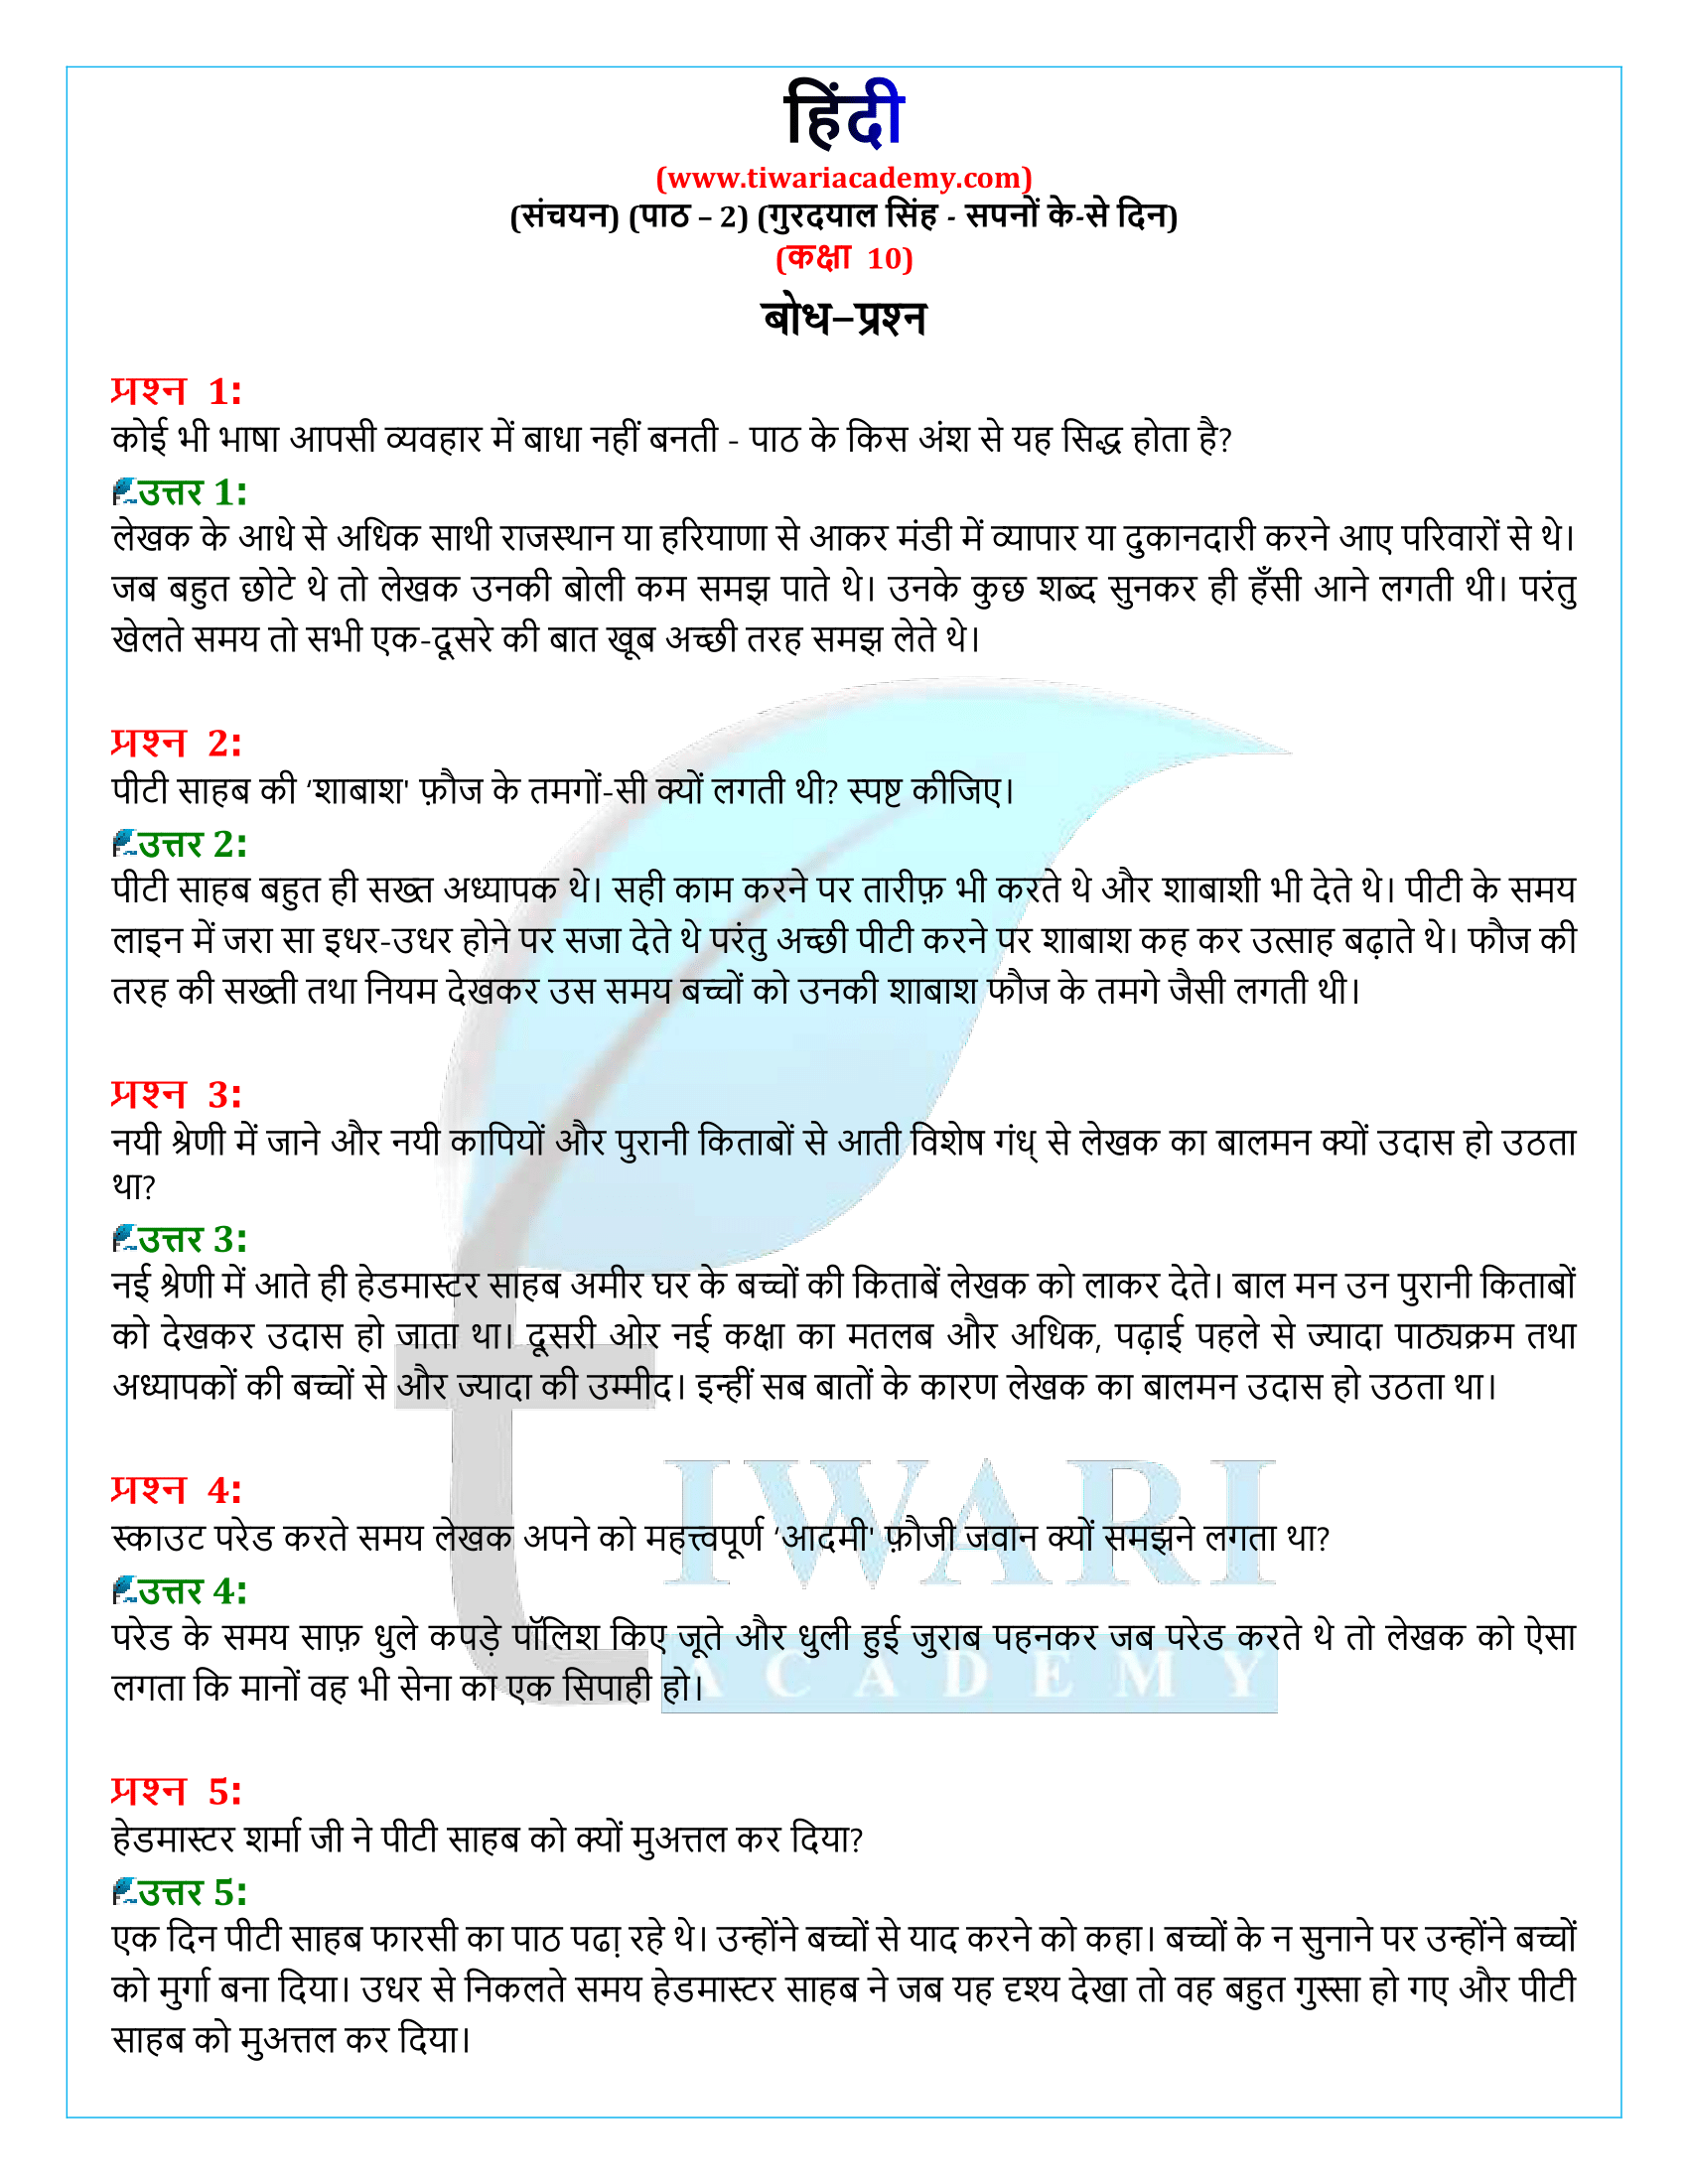 कक्षा 10 हिंदी संचयन अध्याय 2 के प्रश्न उत्तर